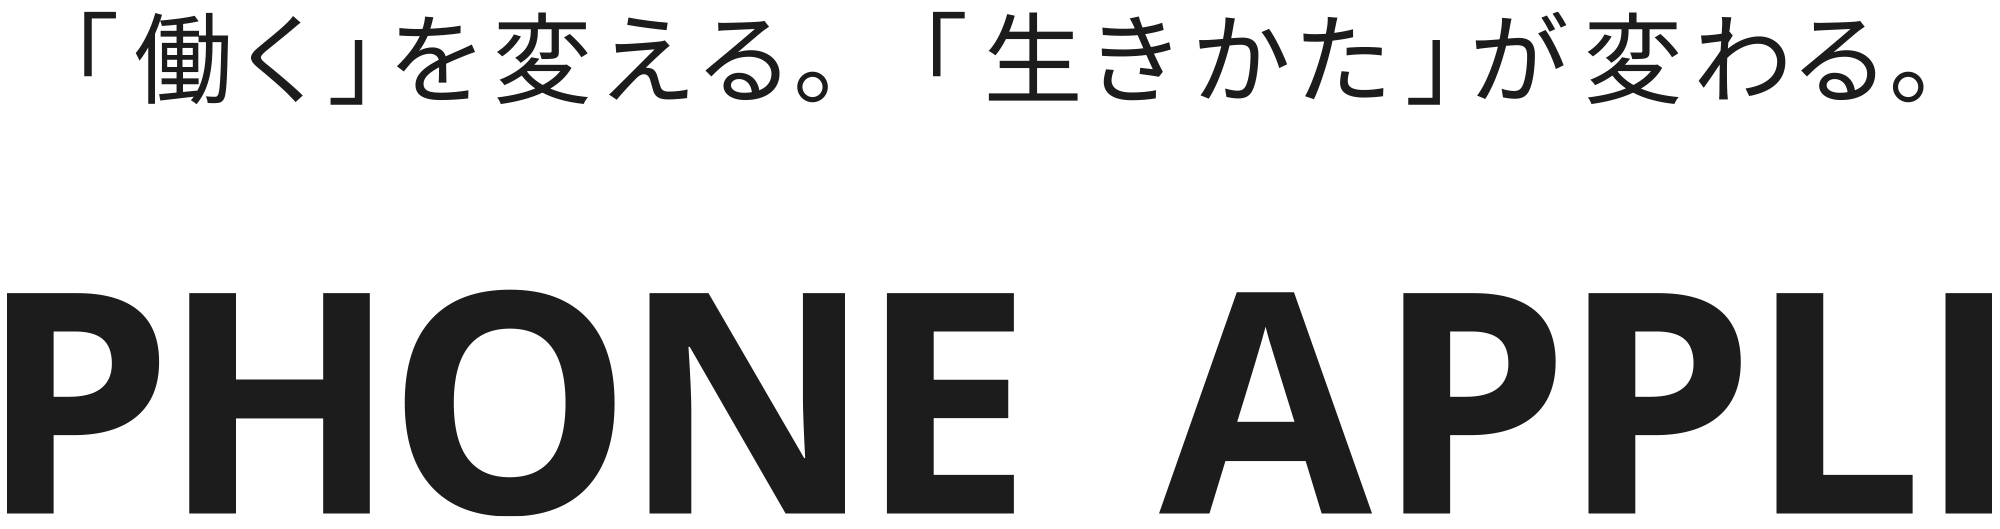 株式会社PHONE APPLI ロゴ